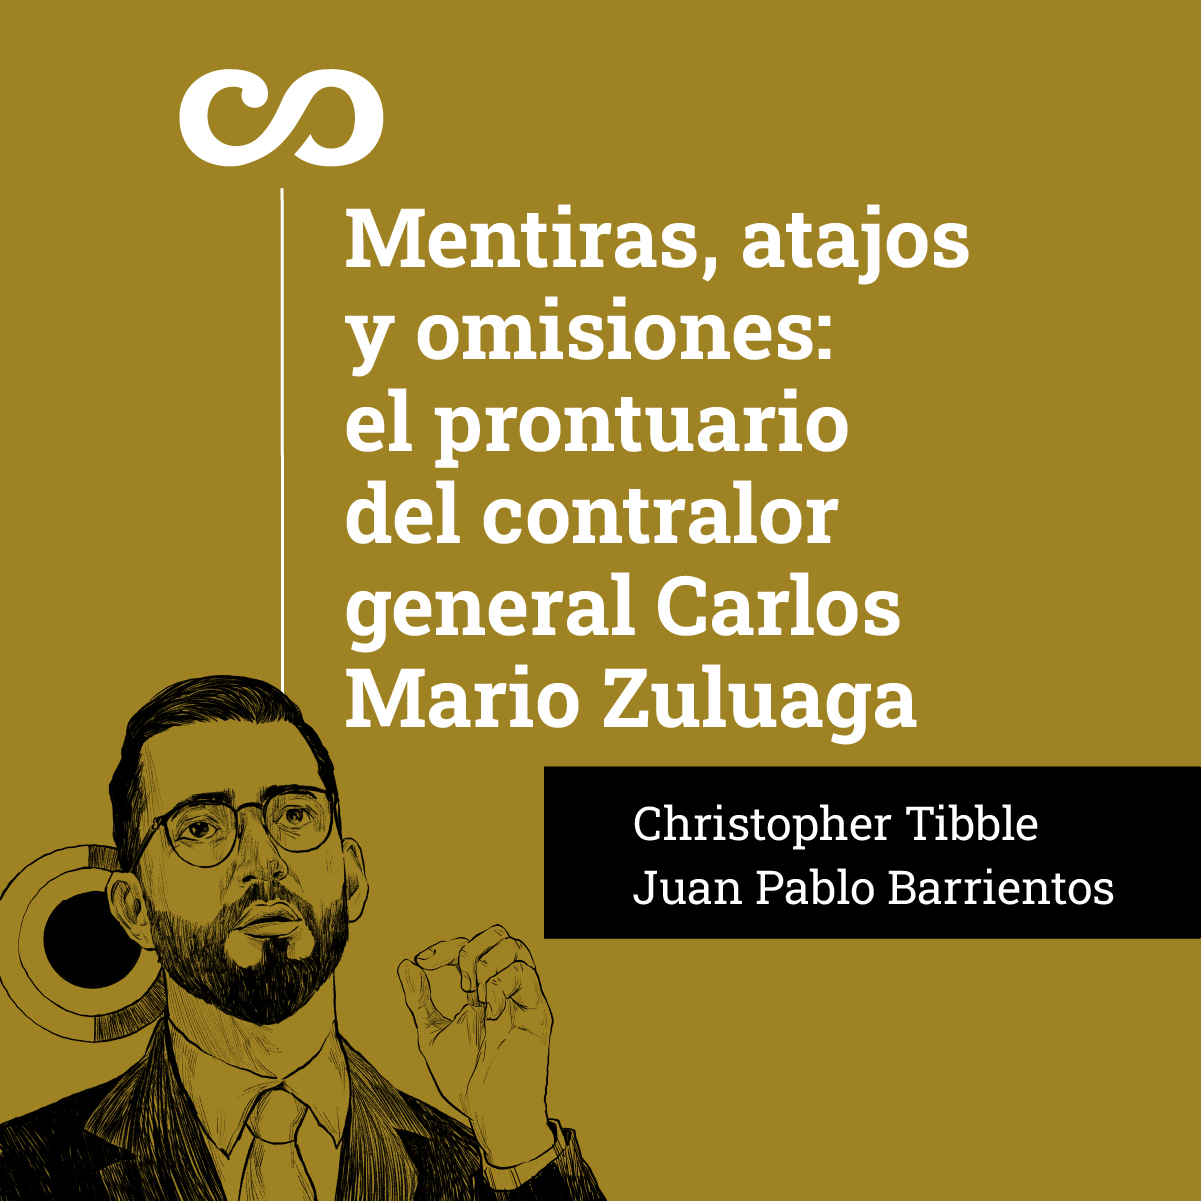 Mentiras, atajos y omisiones: el prontuario del contralor general Carlos Mario Zuluaga